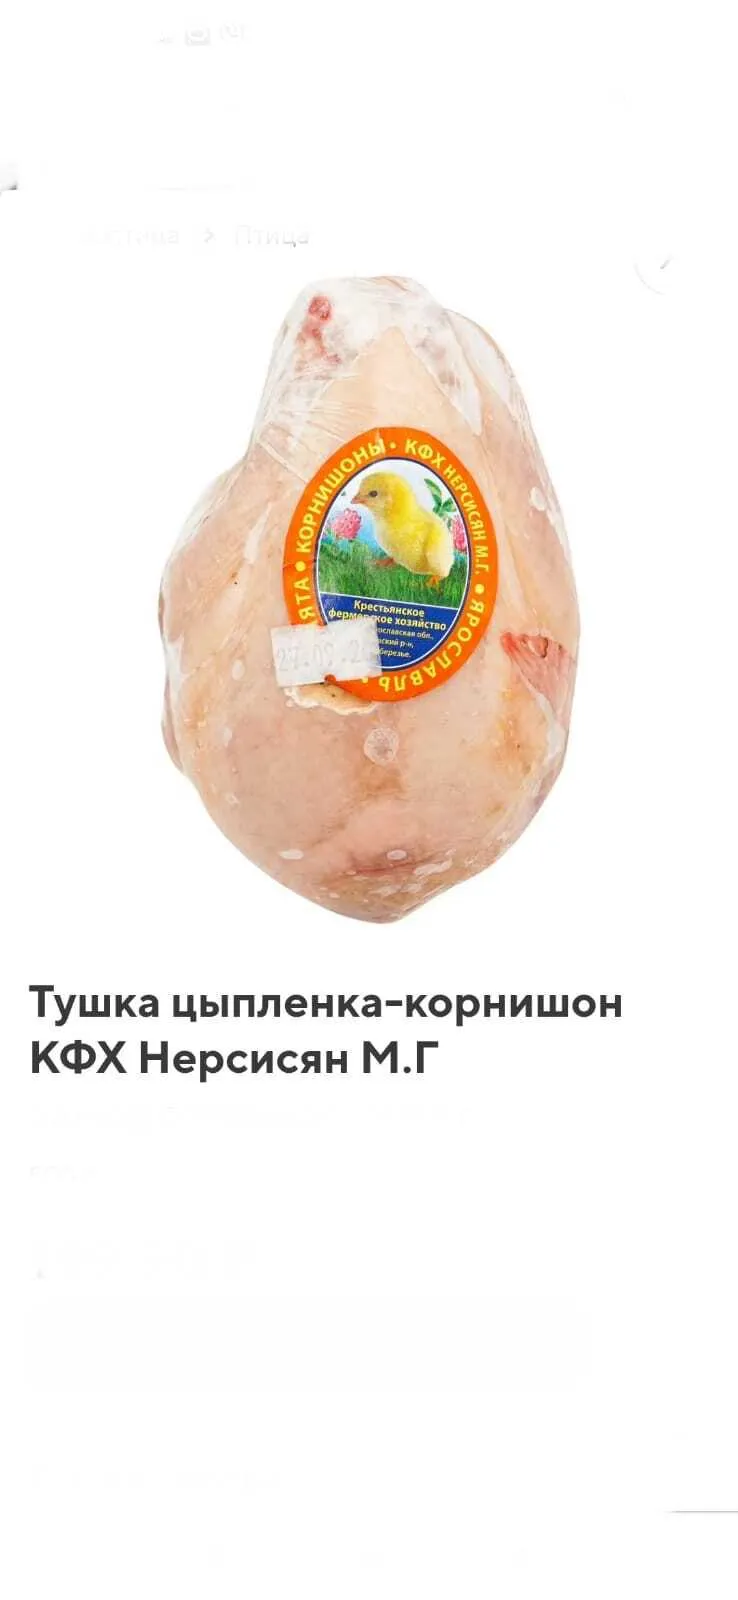 цыпленок корнишон в Москве